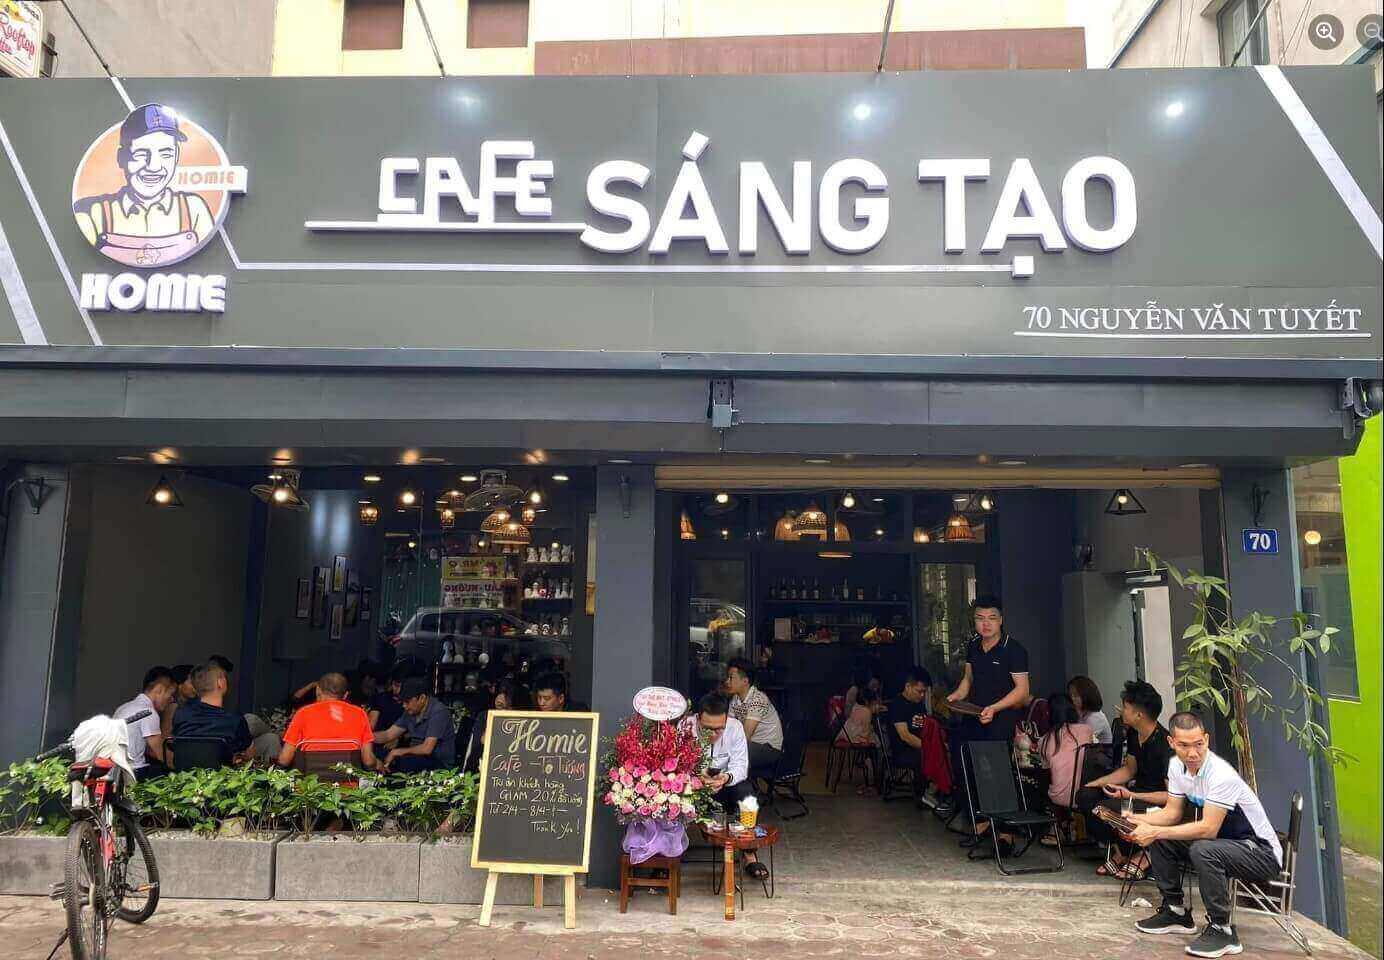 sang-nhuong-quan-cafe-sang-tao-homie